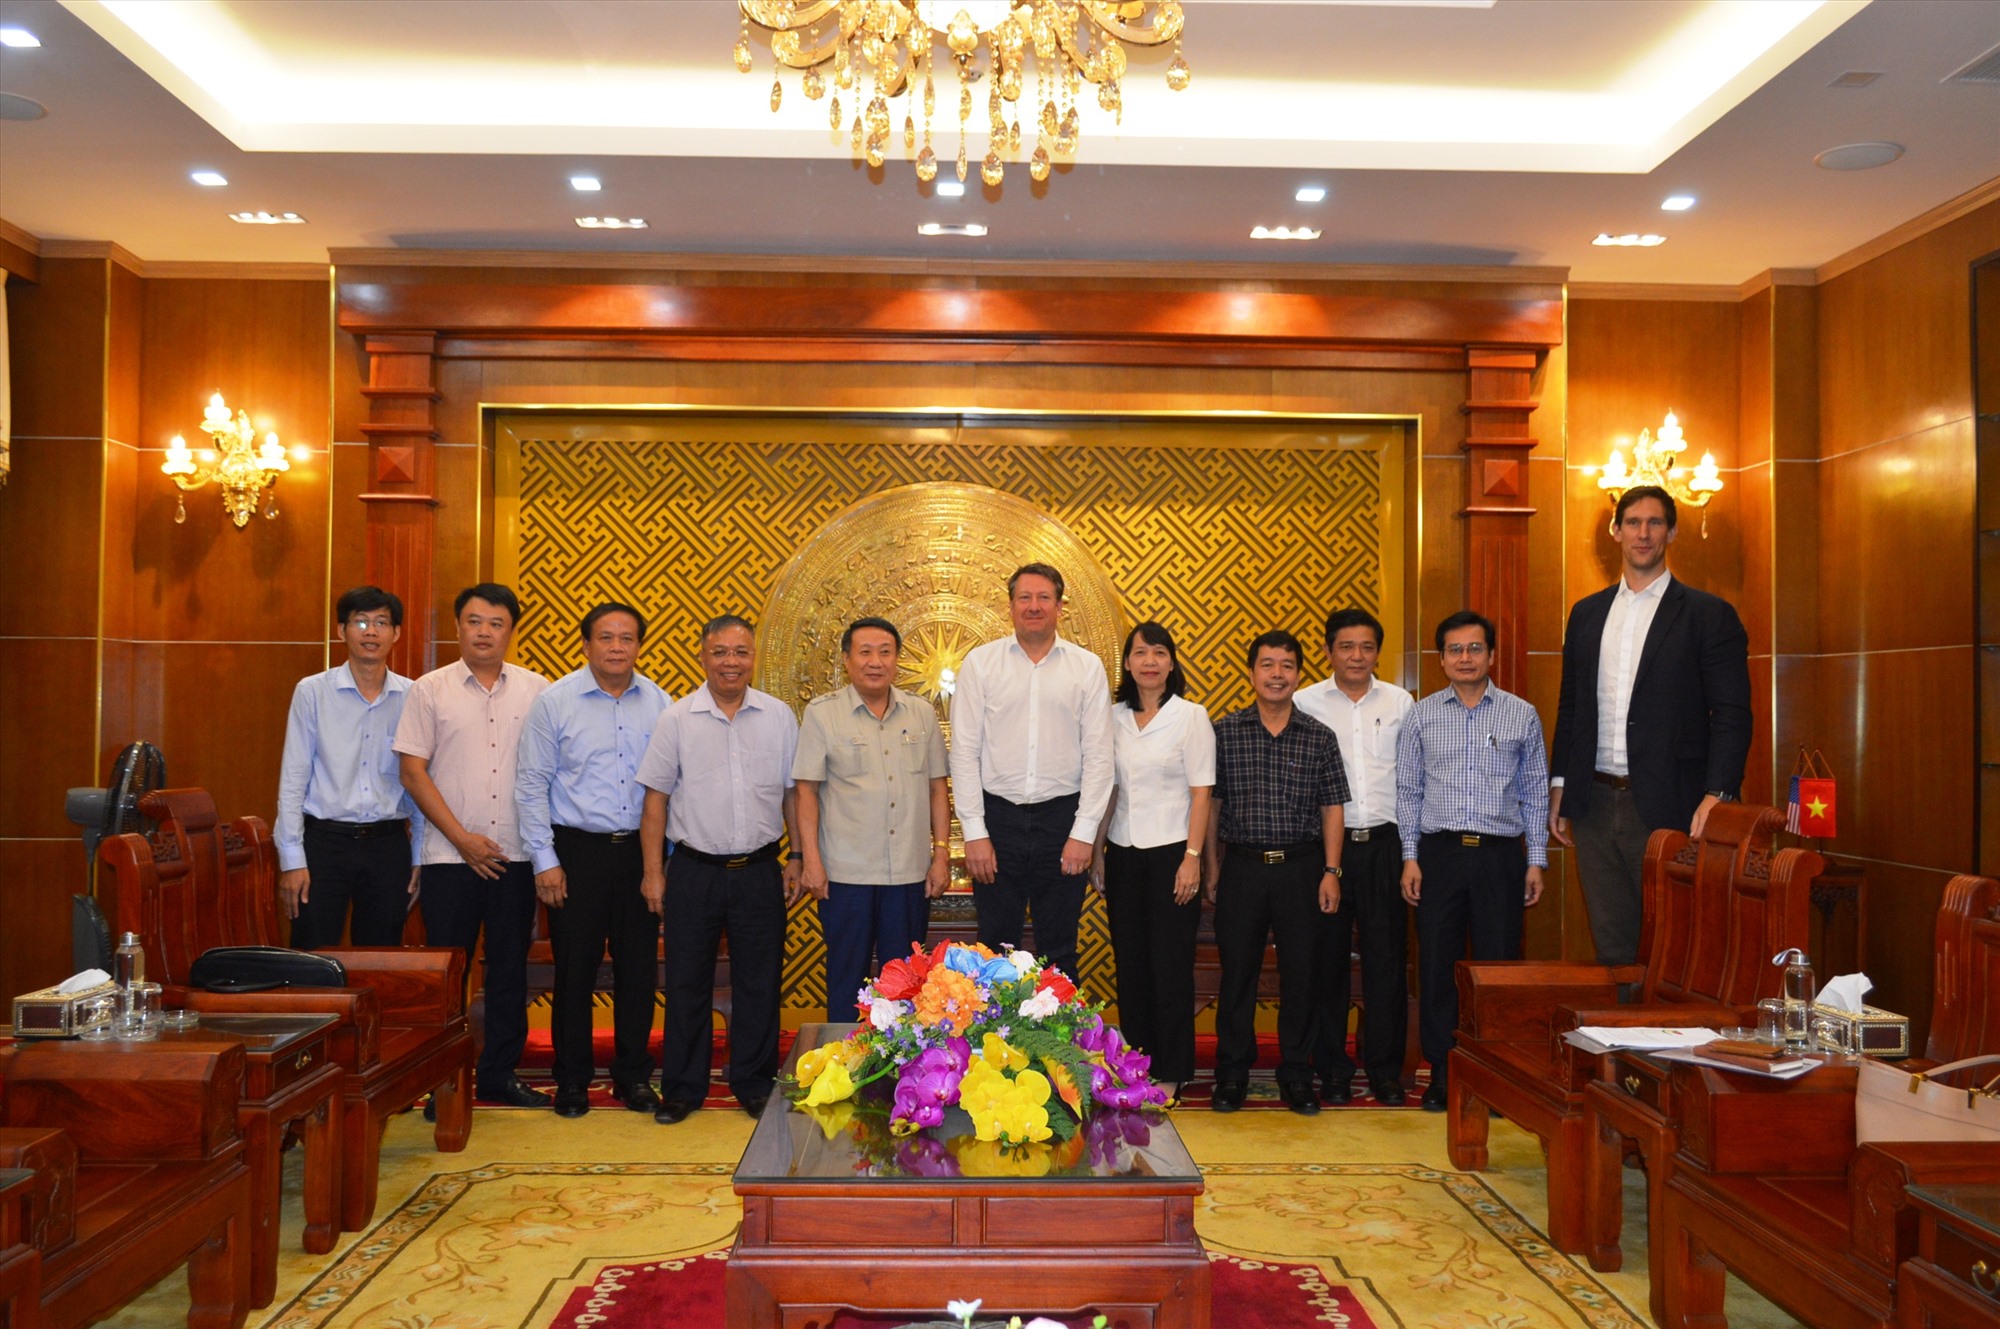 Phó Chủ tịch Thường trực UBND tỉnh Hà Sỹ Đồng chụp hình lưu niệm với nhà đầu tư - Ảnh: ĐV